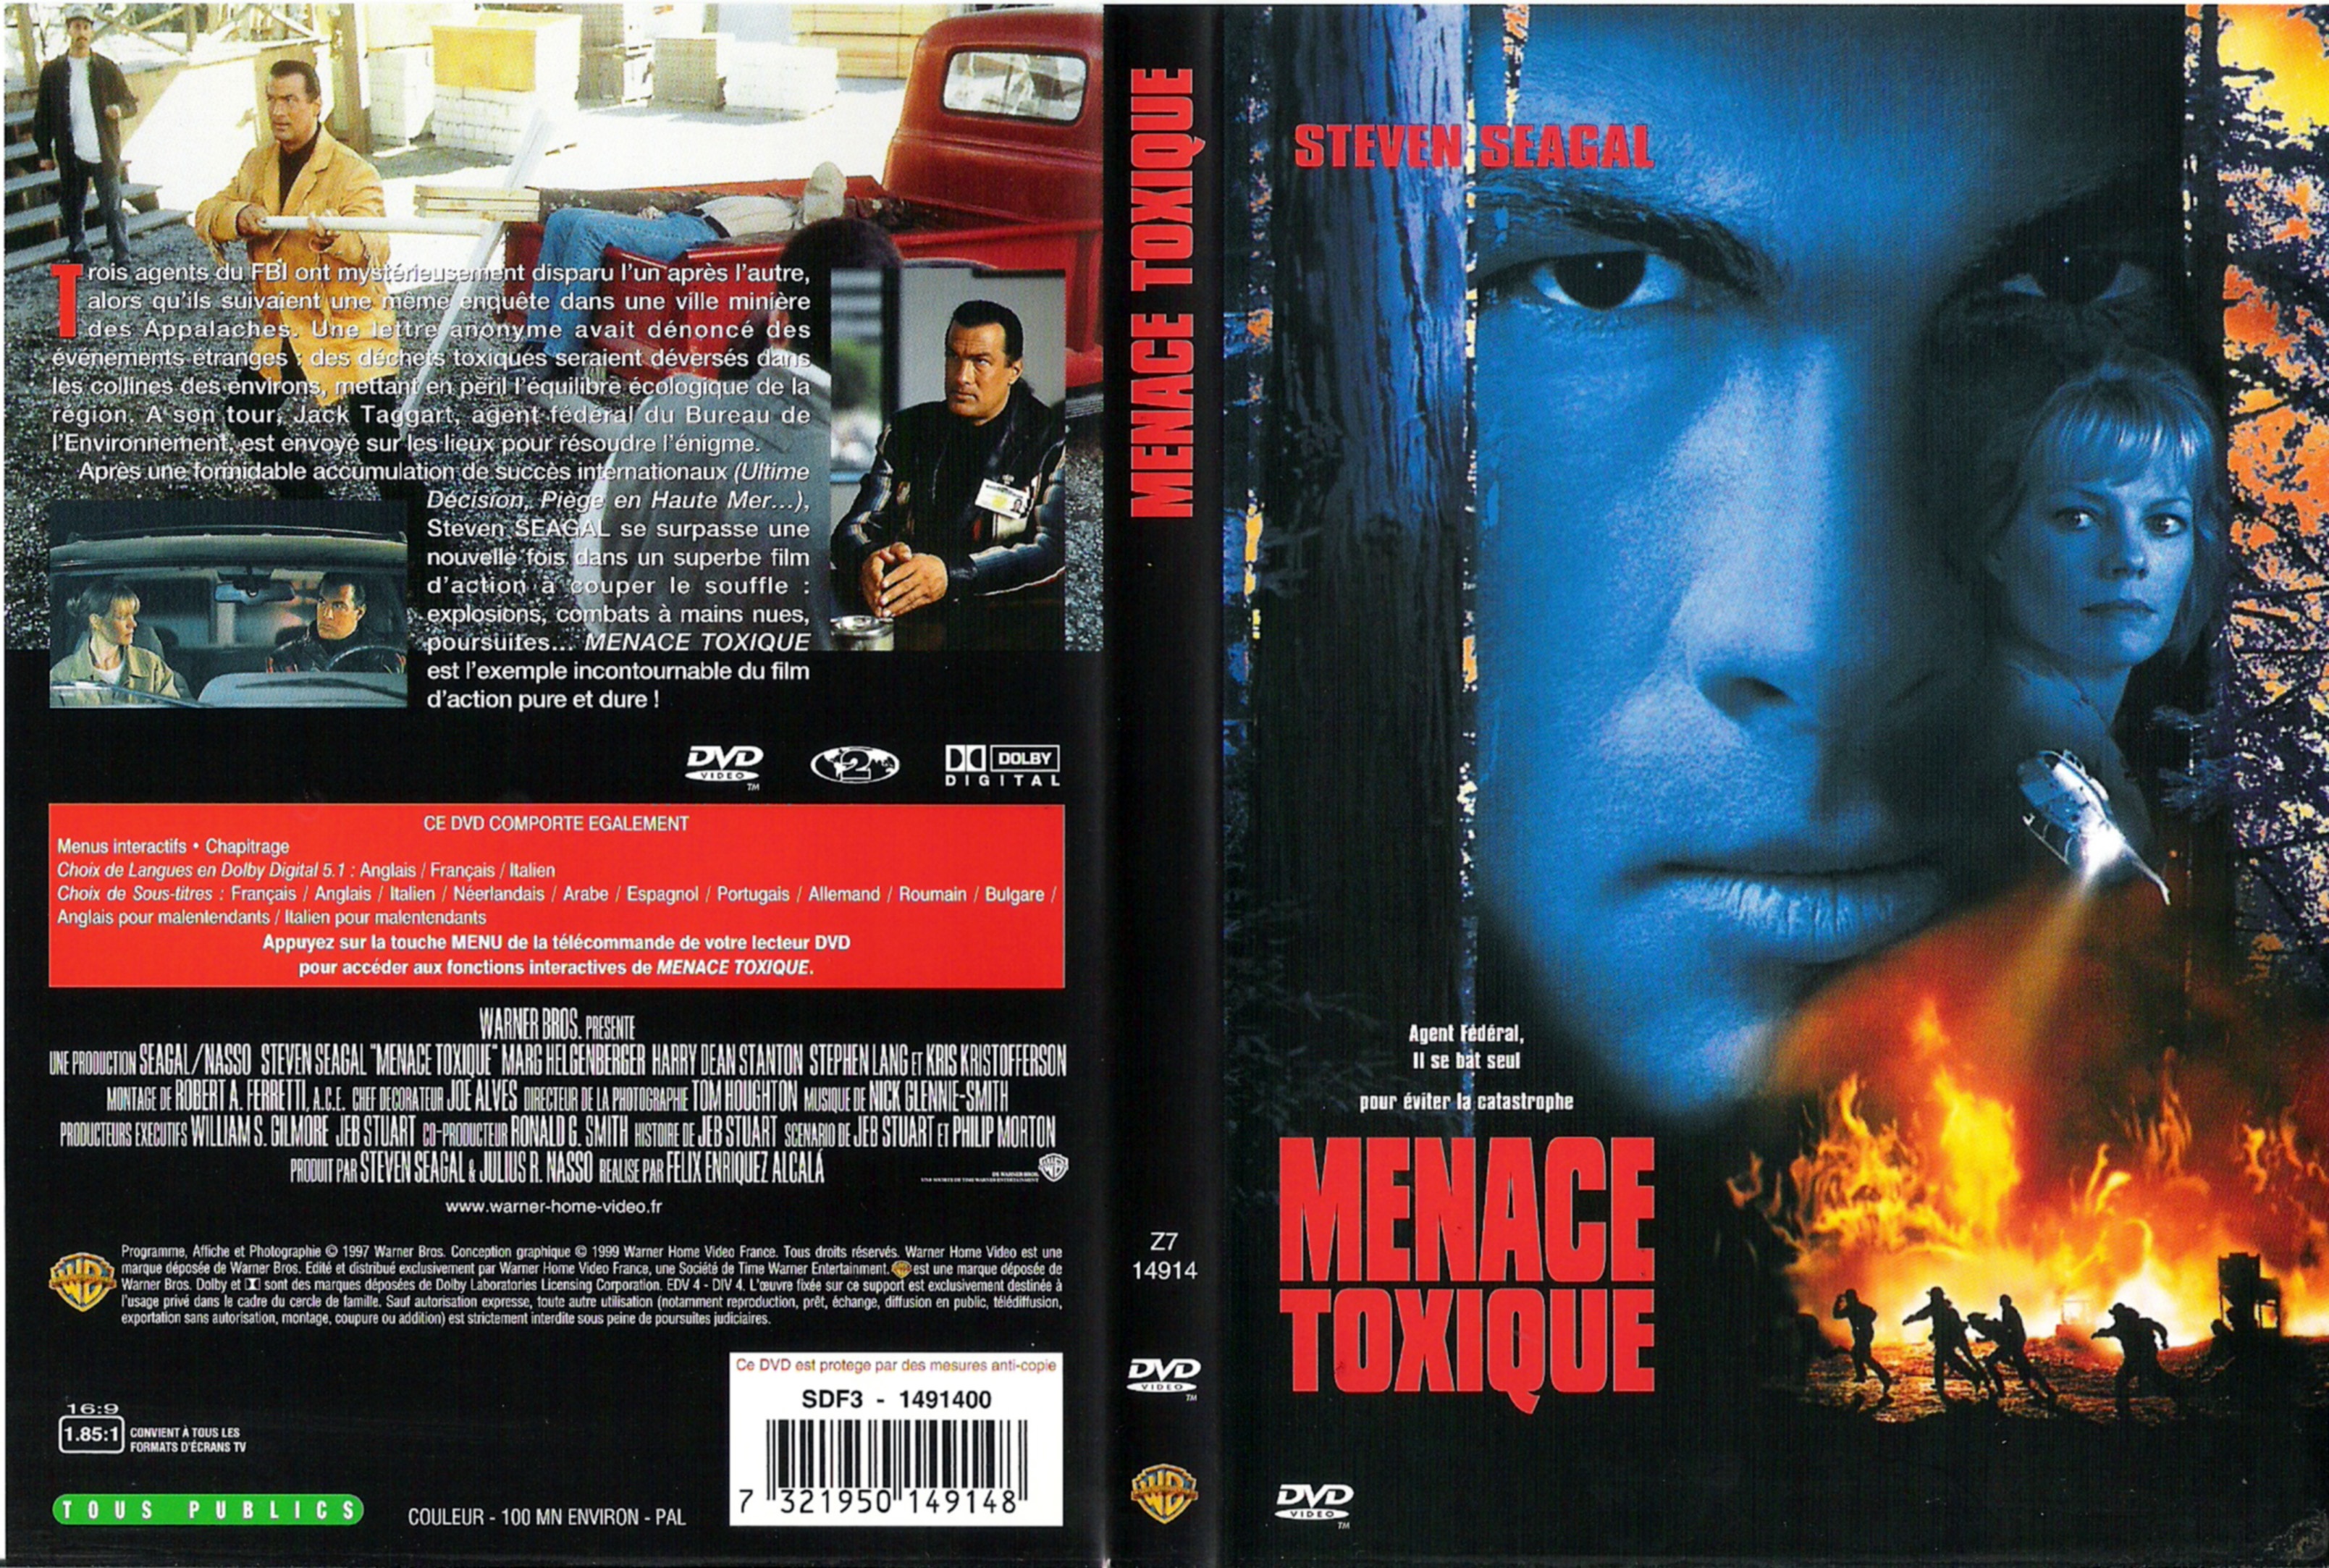 Jaquette DVD Menace toxique v2